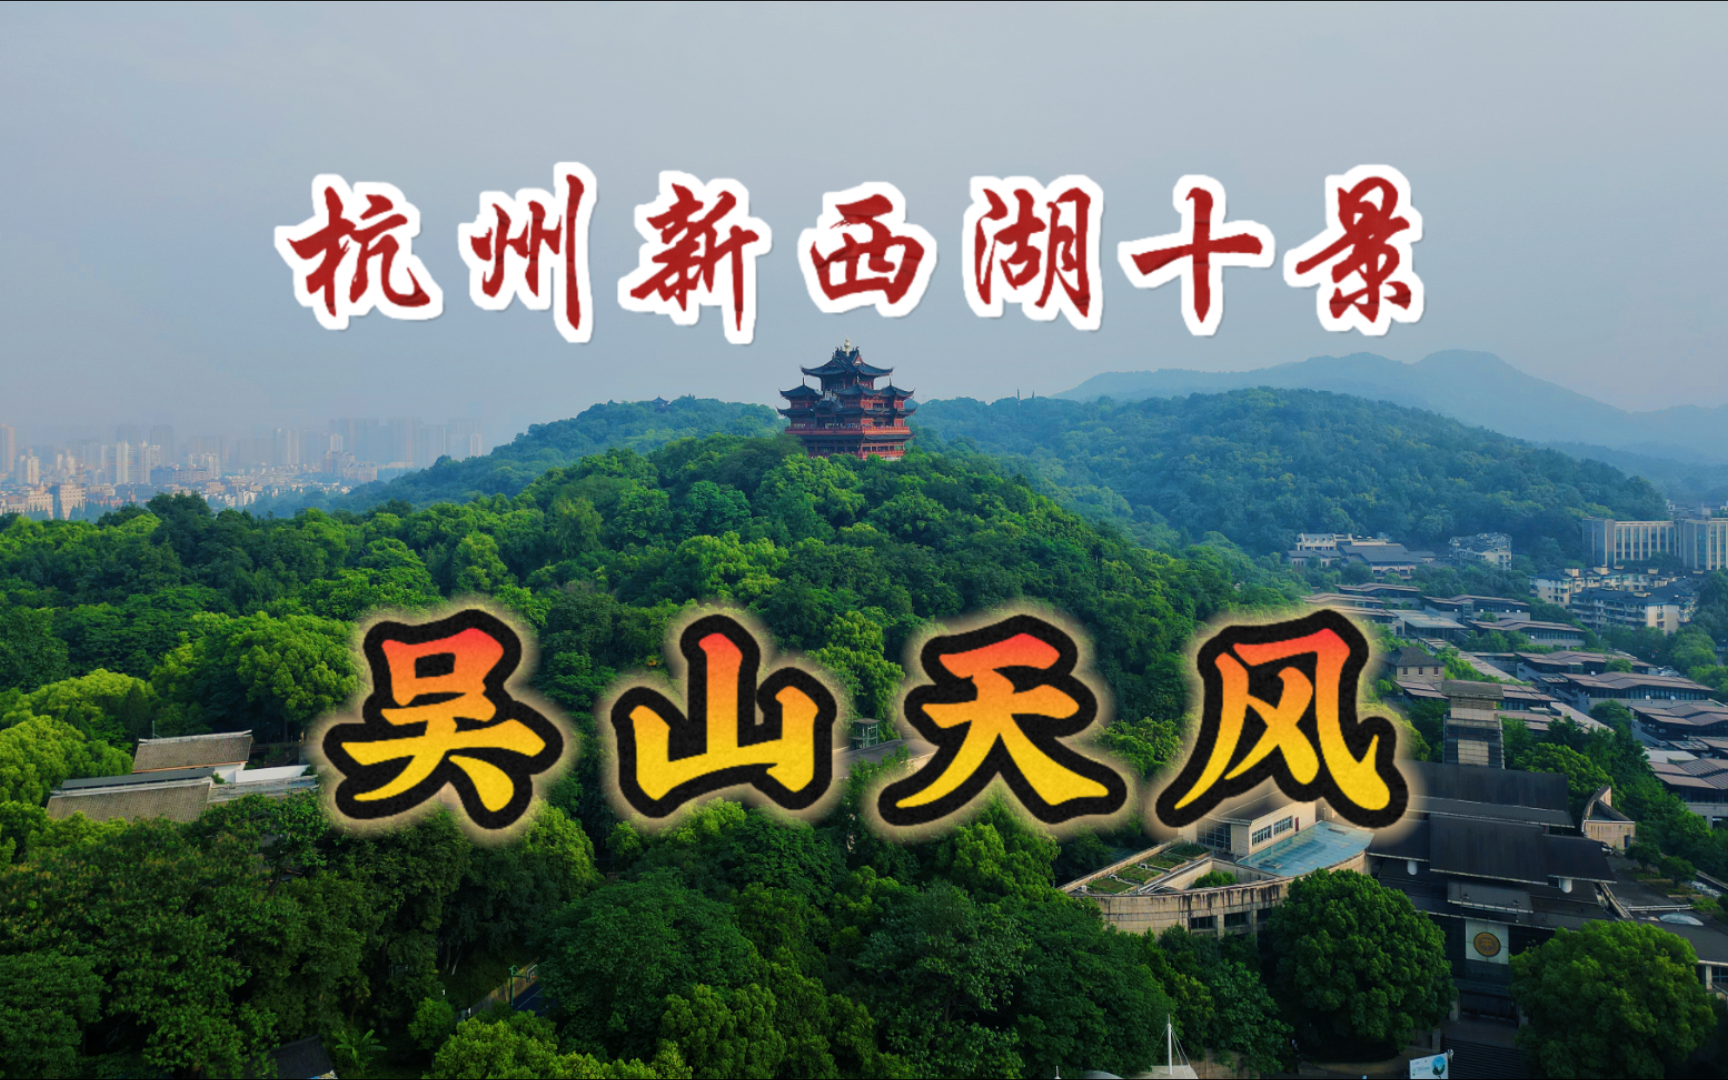 吴山天风，杭州新西湖十景之一，老杭州的历史文化名山，风景秀美